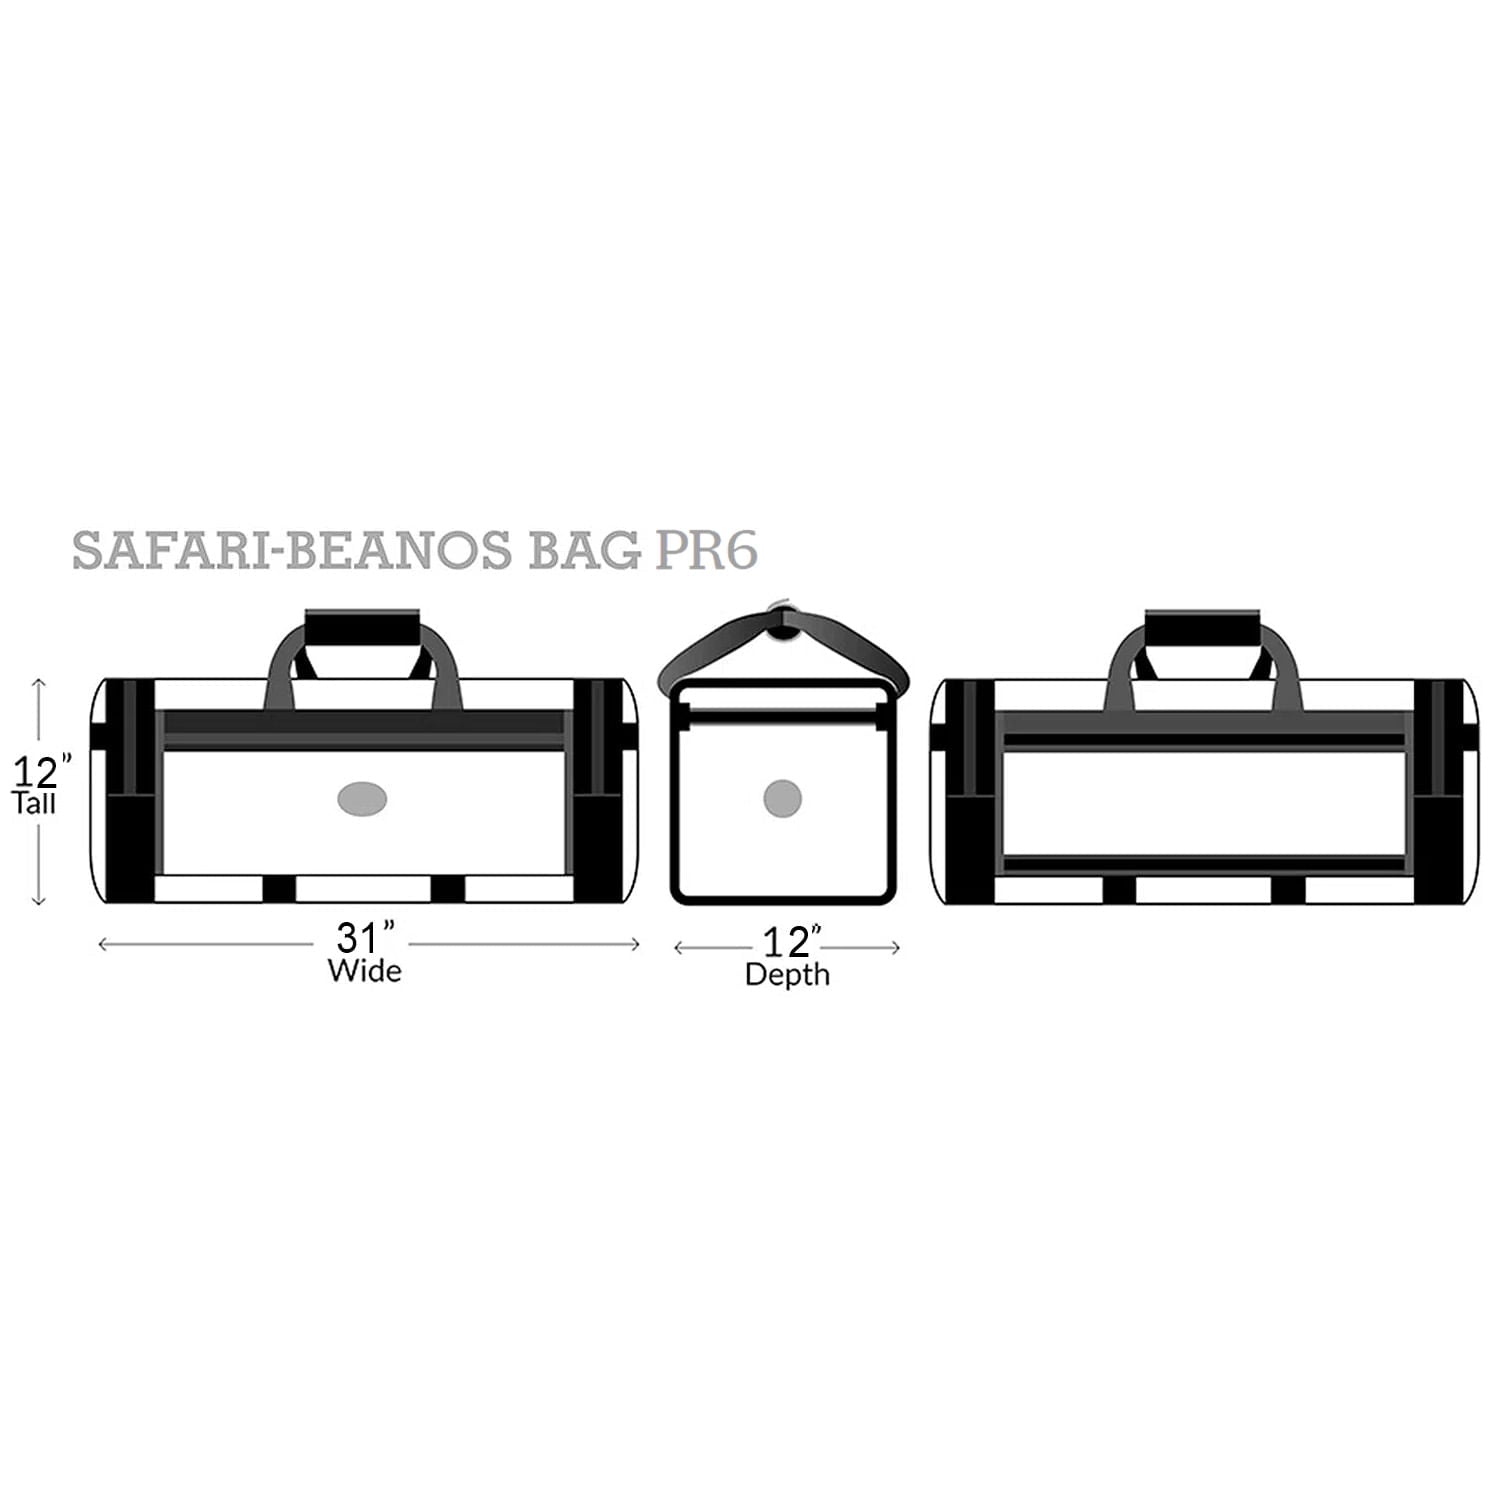 PR6 Safari Beano dimensions 12 inches tall x 31 inches wide x 12 inches depth. 